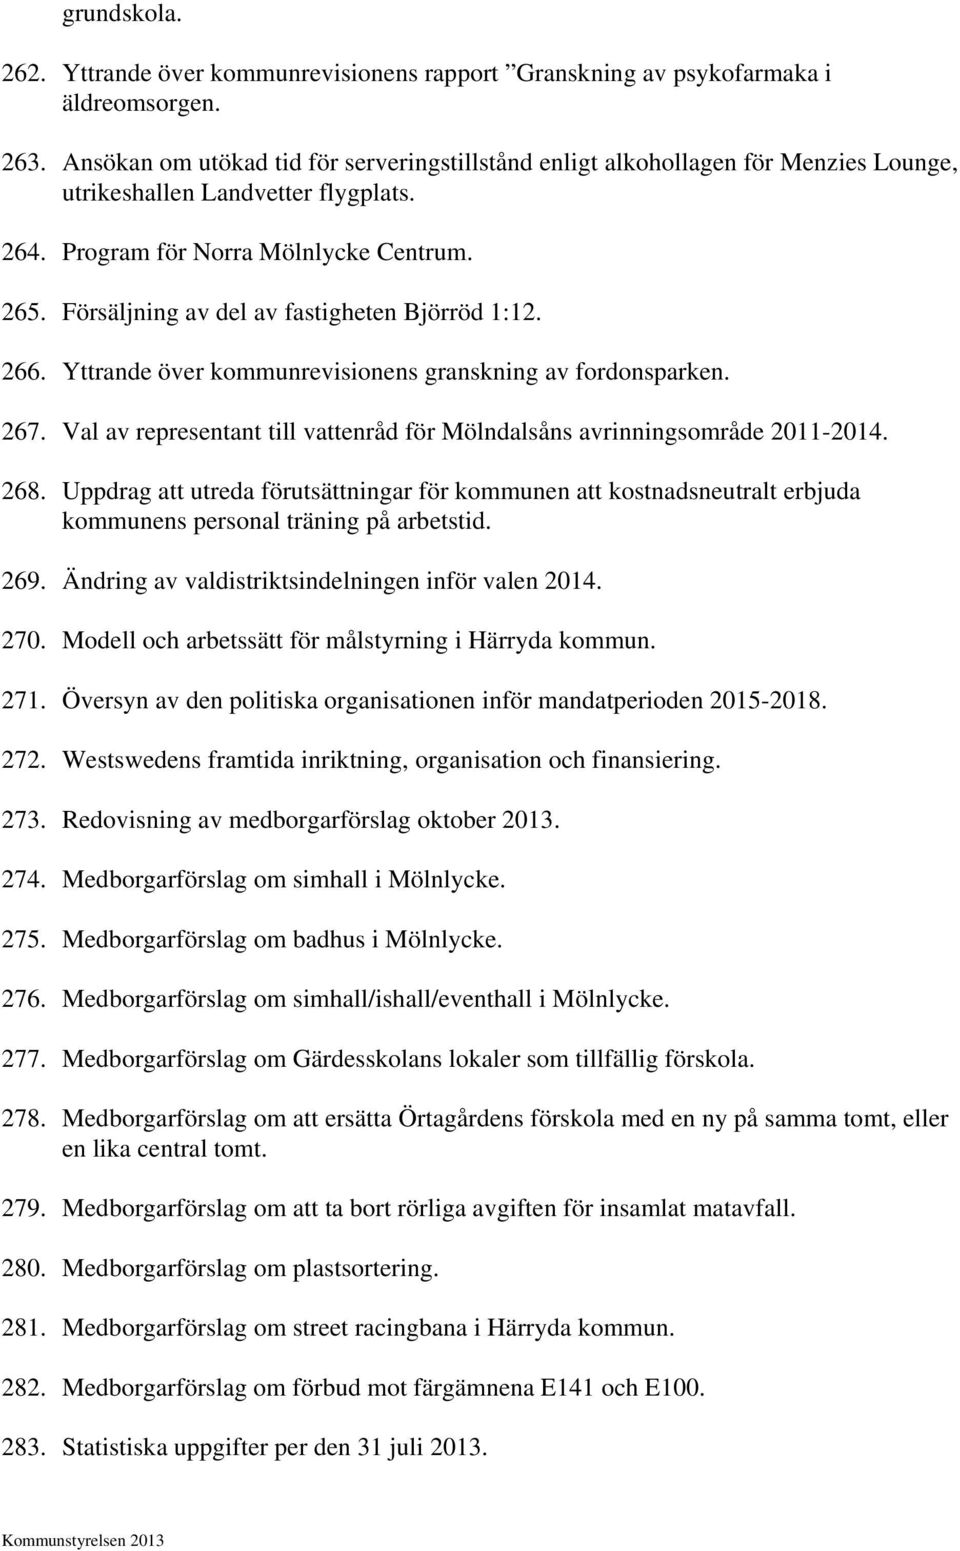 Försäljning av del av fastigheten Björröd 1:12. 266. Yttrande över kommunrevisionens granskning av fordonsparken. 267. Val av representant till vattenråd för Mölndalsåns avrinningsområde 2011-2014.